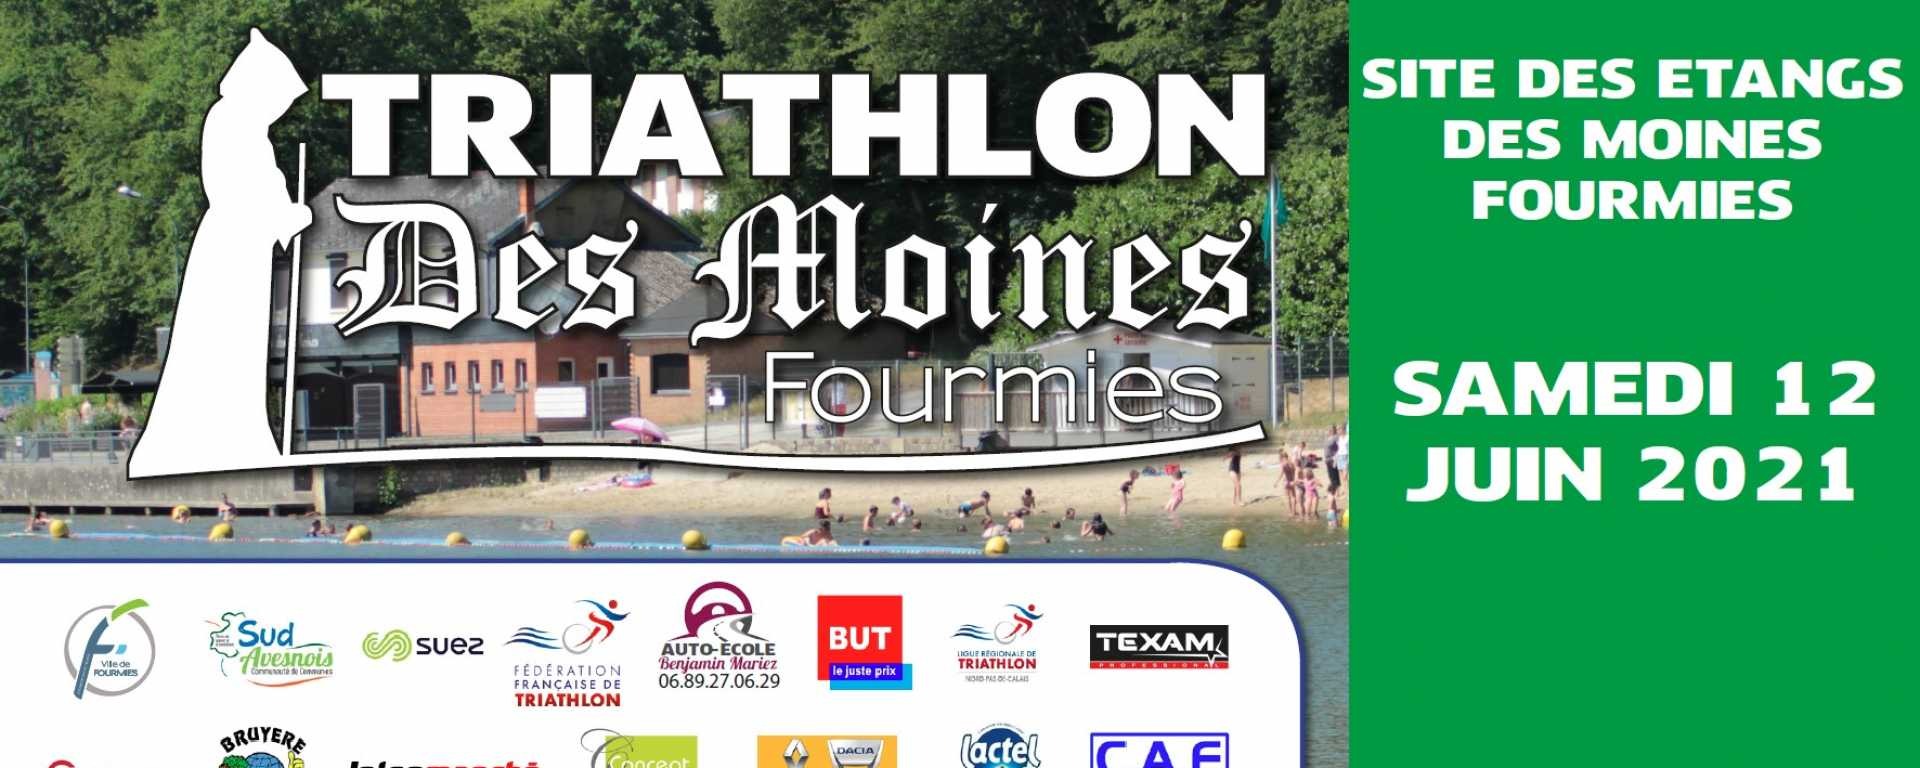 Club Athlétique Fourmisien organise le 12ème TRIATHLON DE LA VILLE DE FOURMIES, le samedi 12 juin 2021 sur le site des Etangs des Moines.